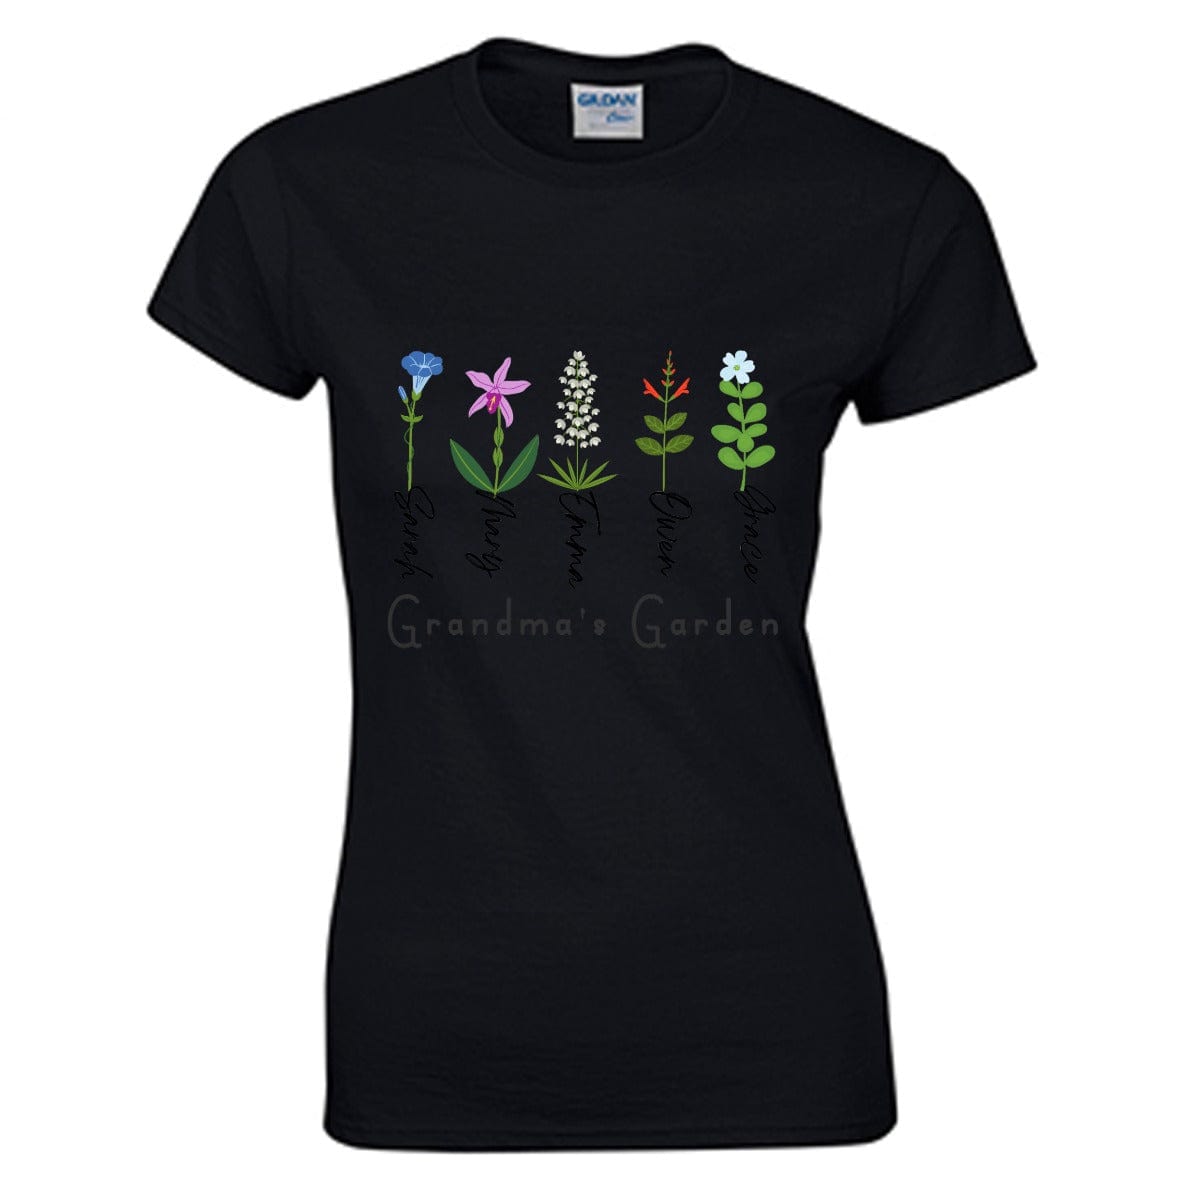 Yoycol T-Shirt Grandma's Garden - O-neck T-shirt | Gildan 180GSM Cotton (DTG)